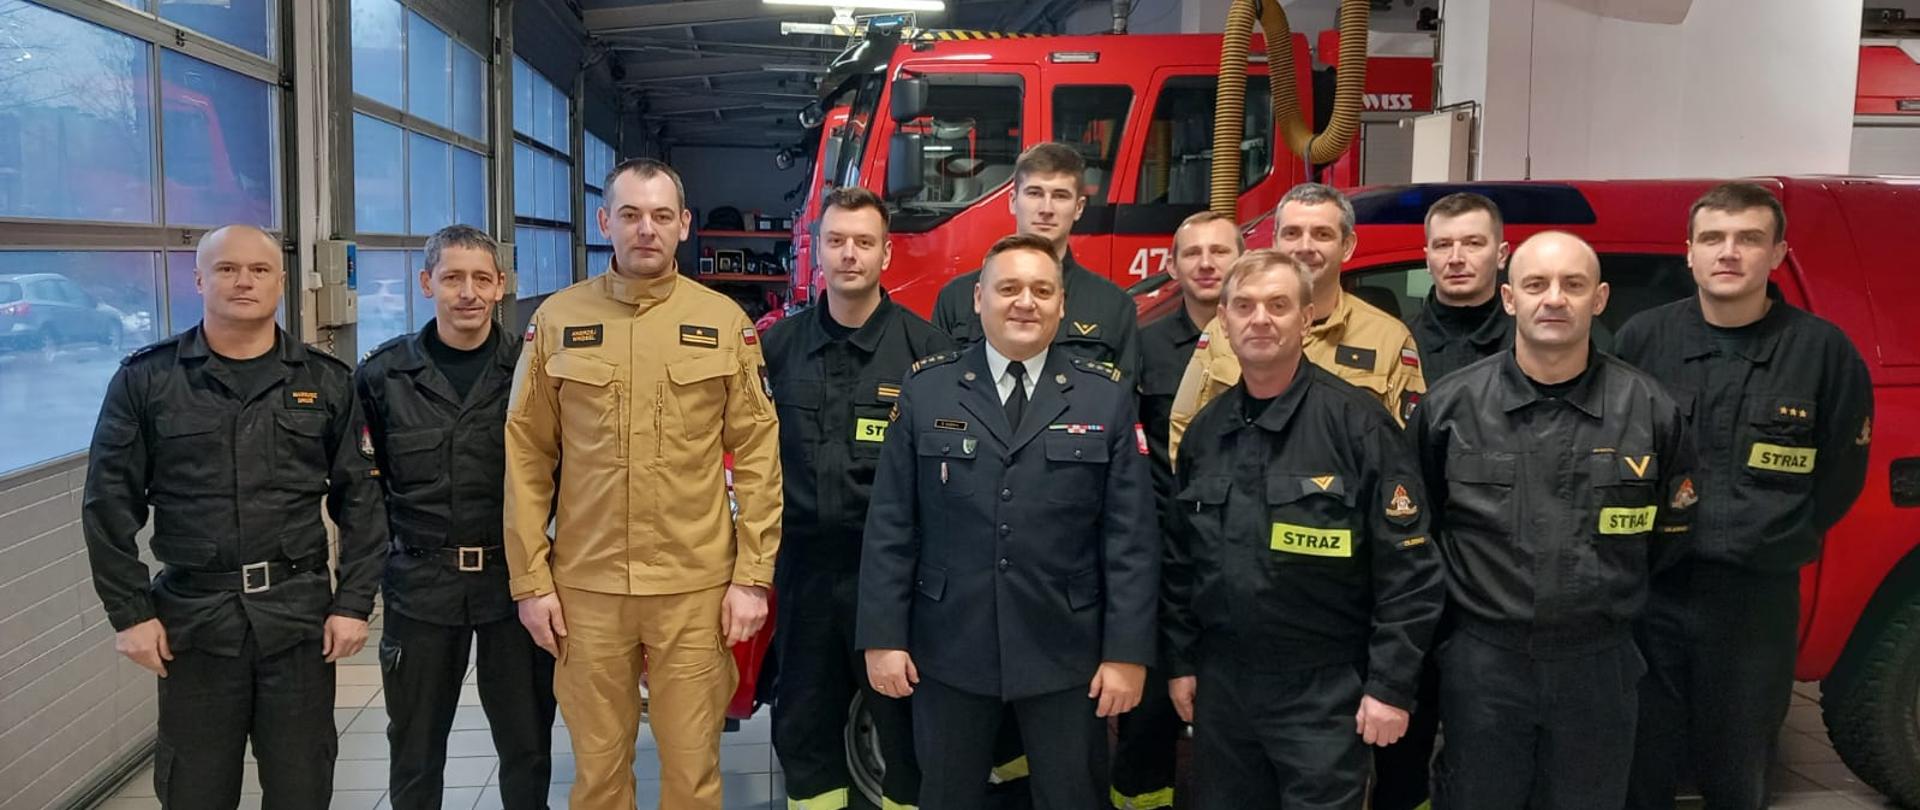 Na zdjęciu Opolski Komendant Wojewódzki PSP, Komendant Powiatowy PSP wraz z zastępcą,
dowódca JRG wraz z strażakami pełniącymi w tym dniu służbę na garażu. W tle samochody pożarnicze.